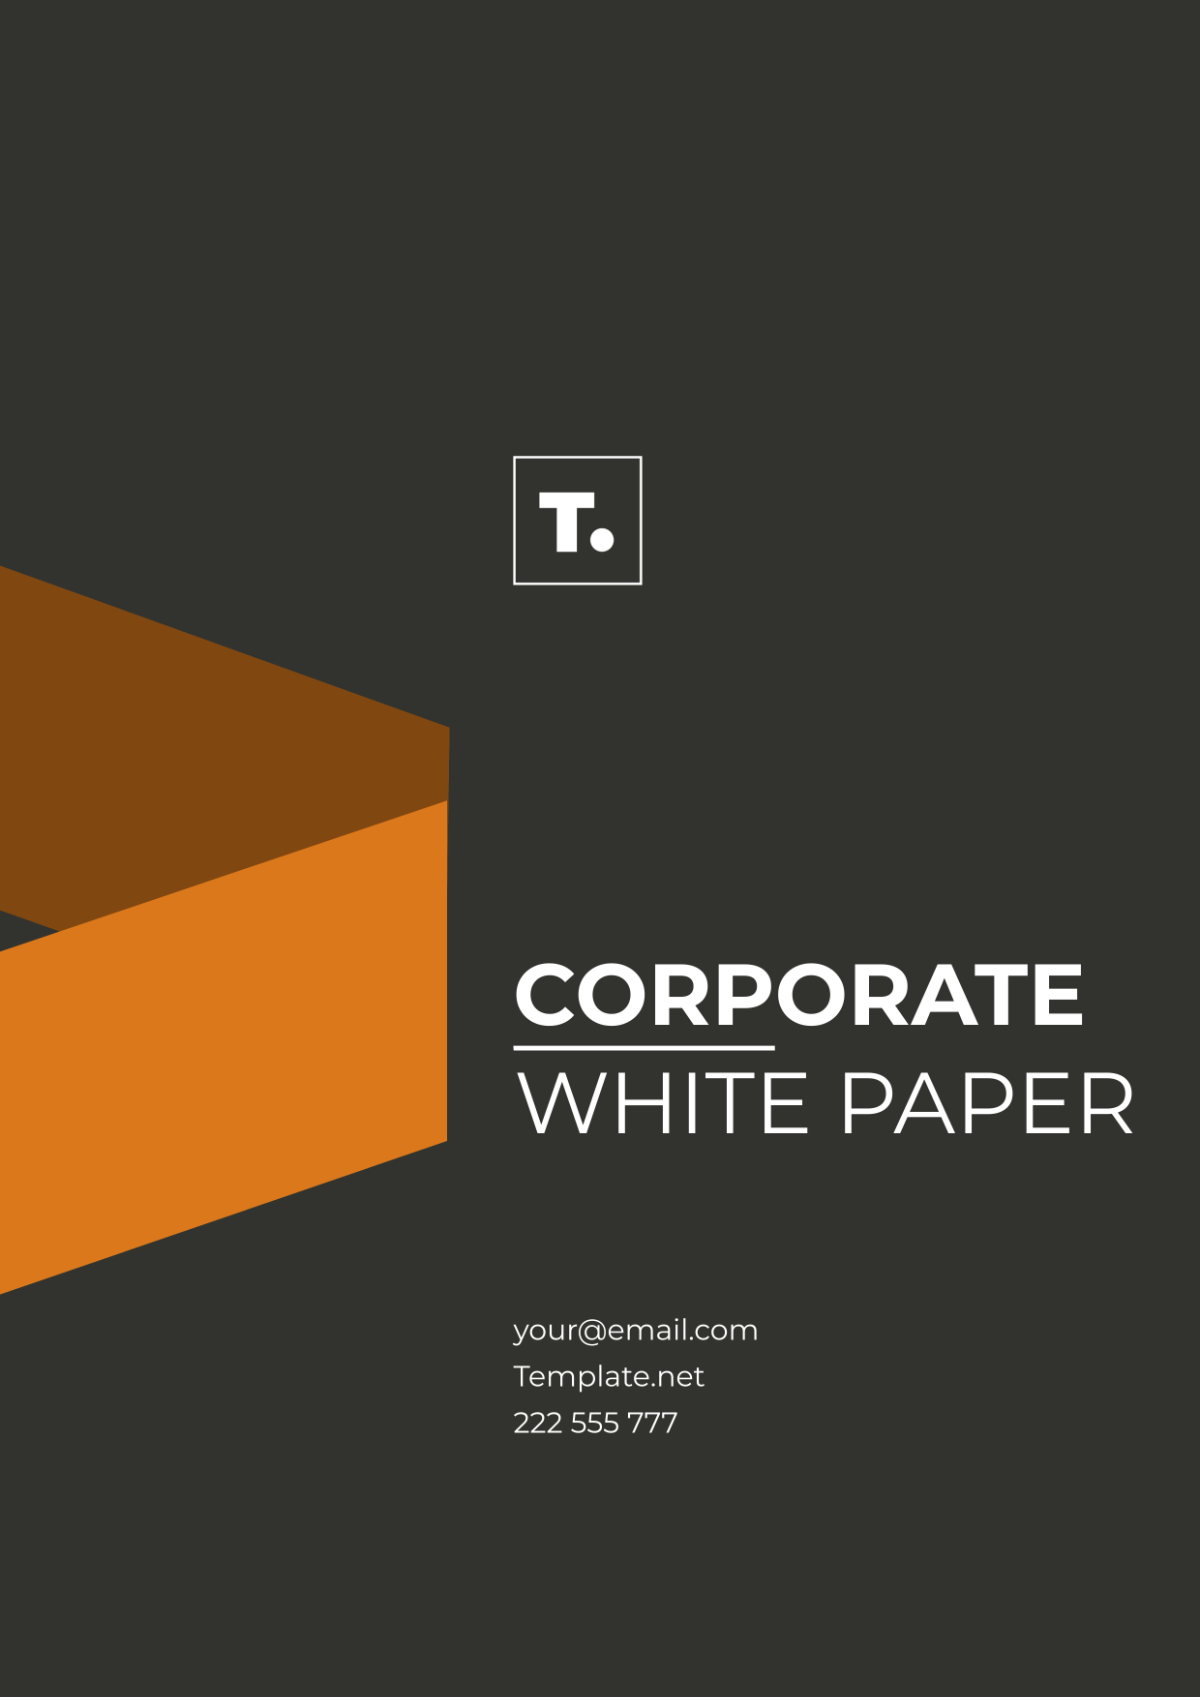 Corporate White Paper Template